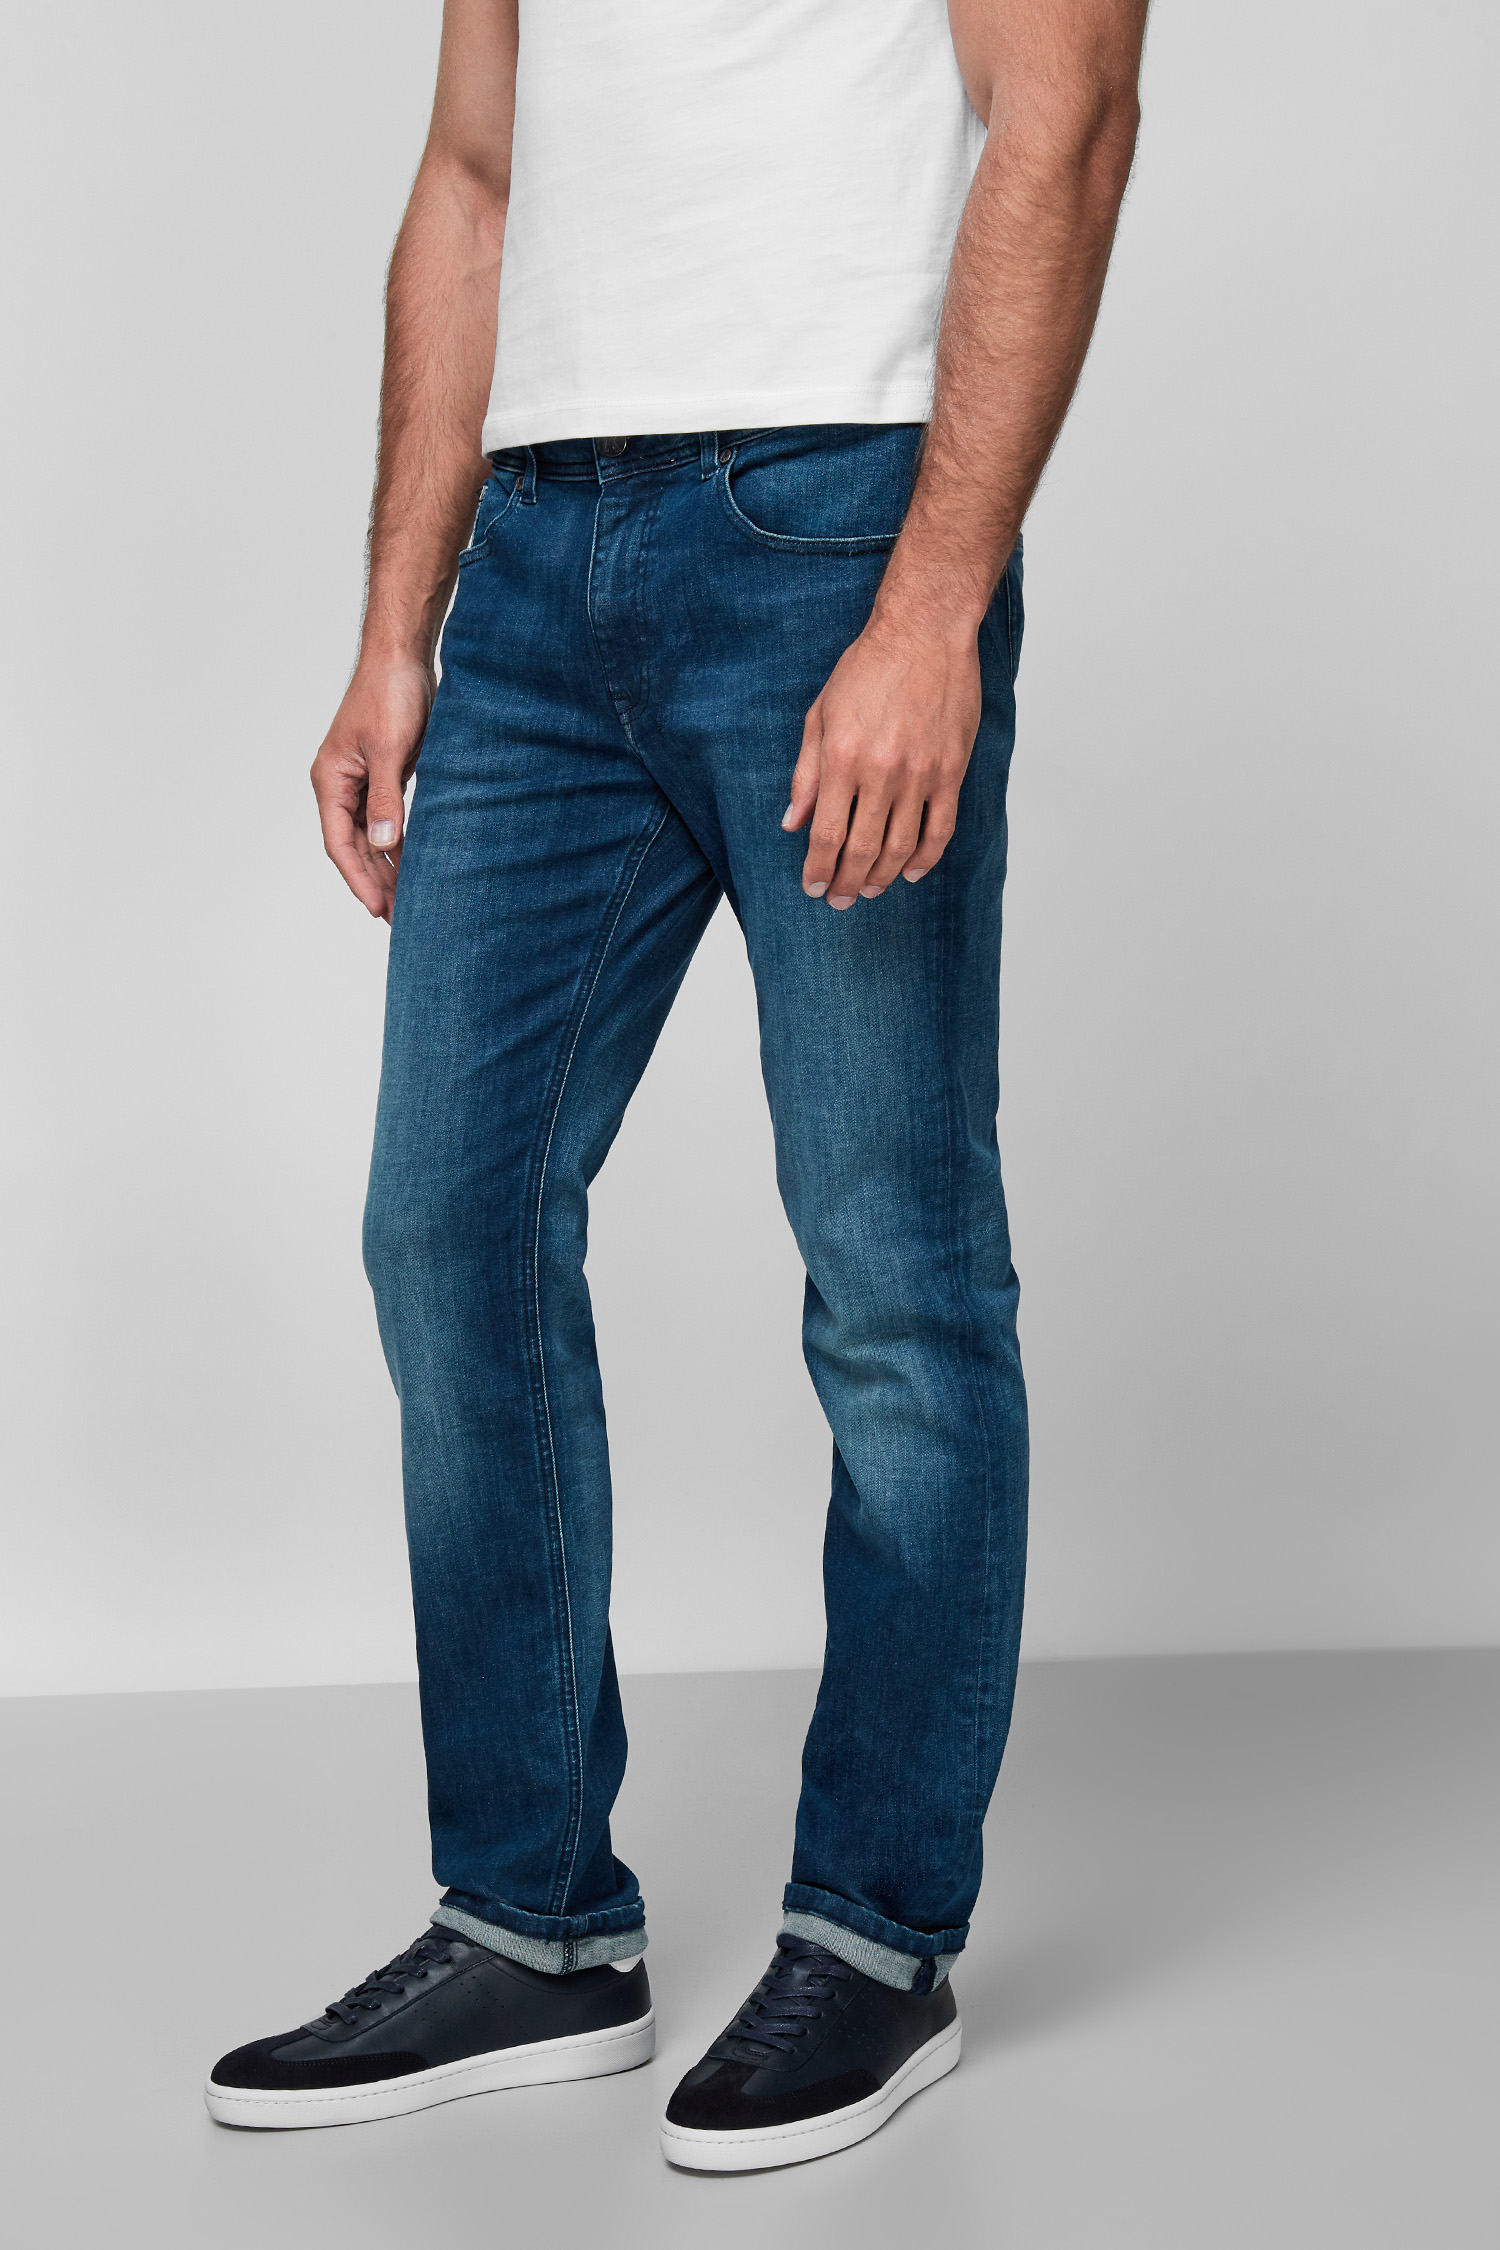 Чоловічі сині джинси Karl Lagerfeld 511830.265840;670